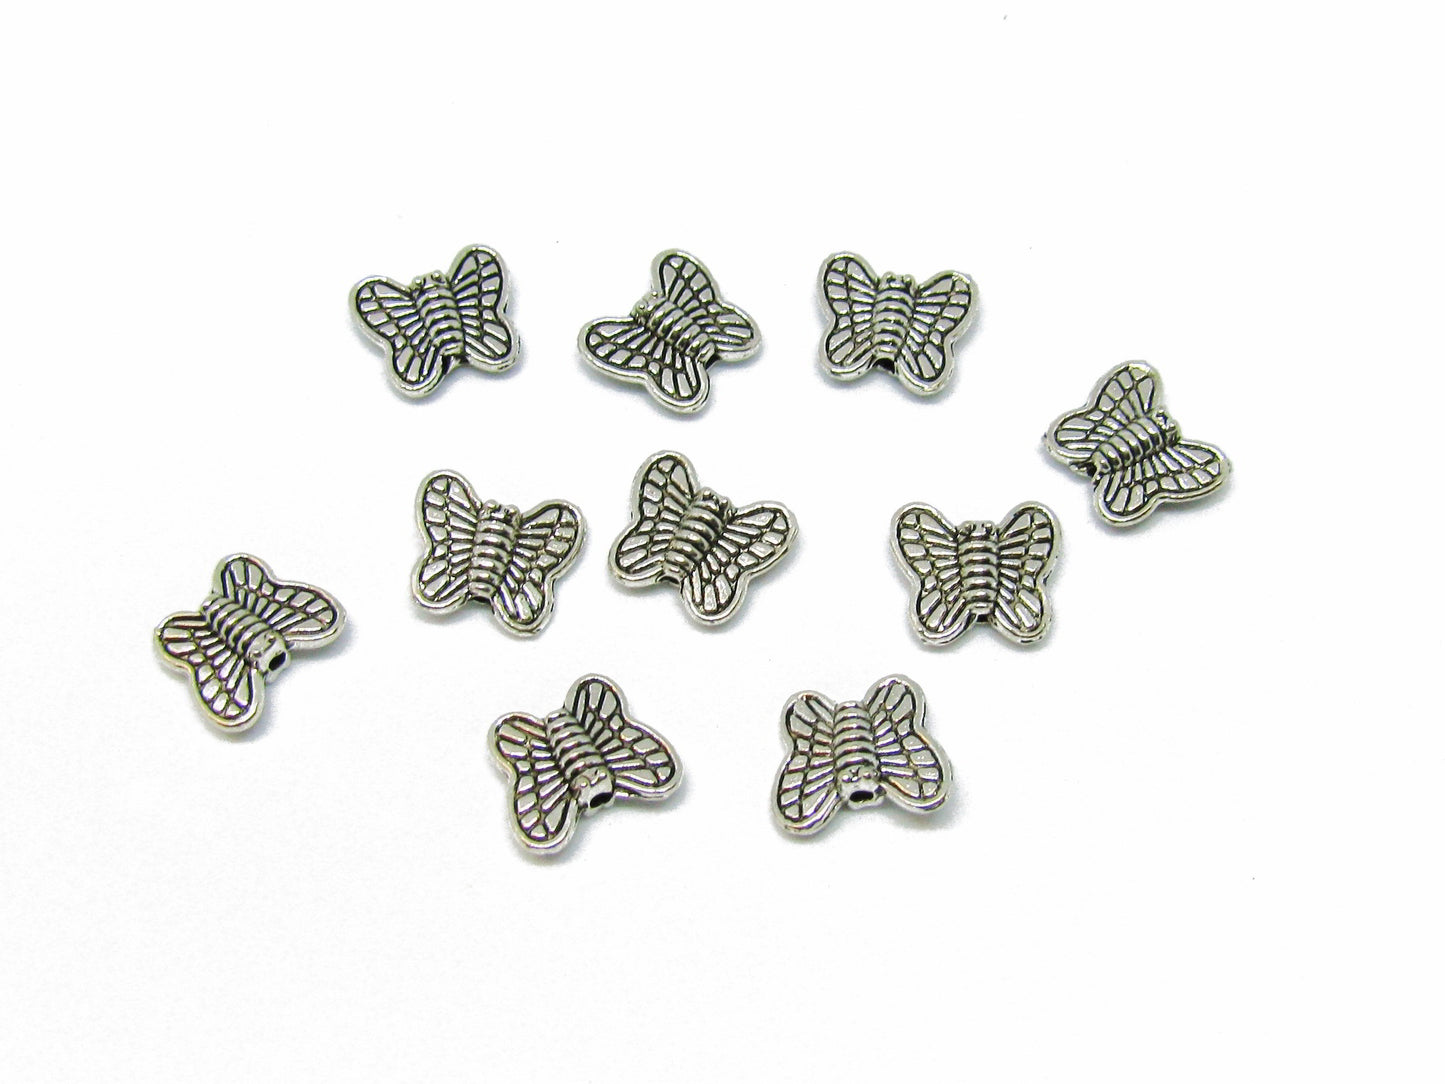 20 Metallperlen Schmetterling, silberfarben,10 mm, Perlen basteln, verzieren